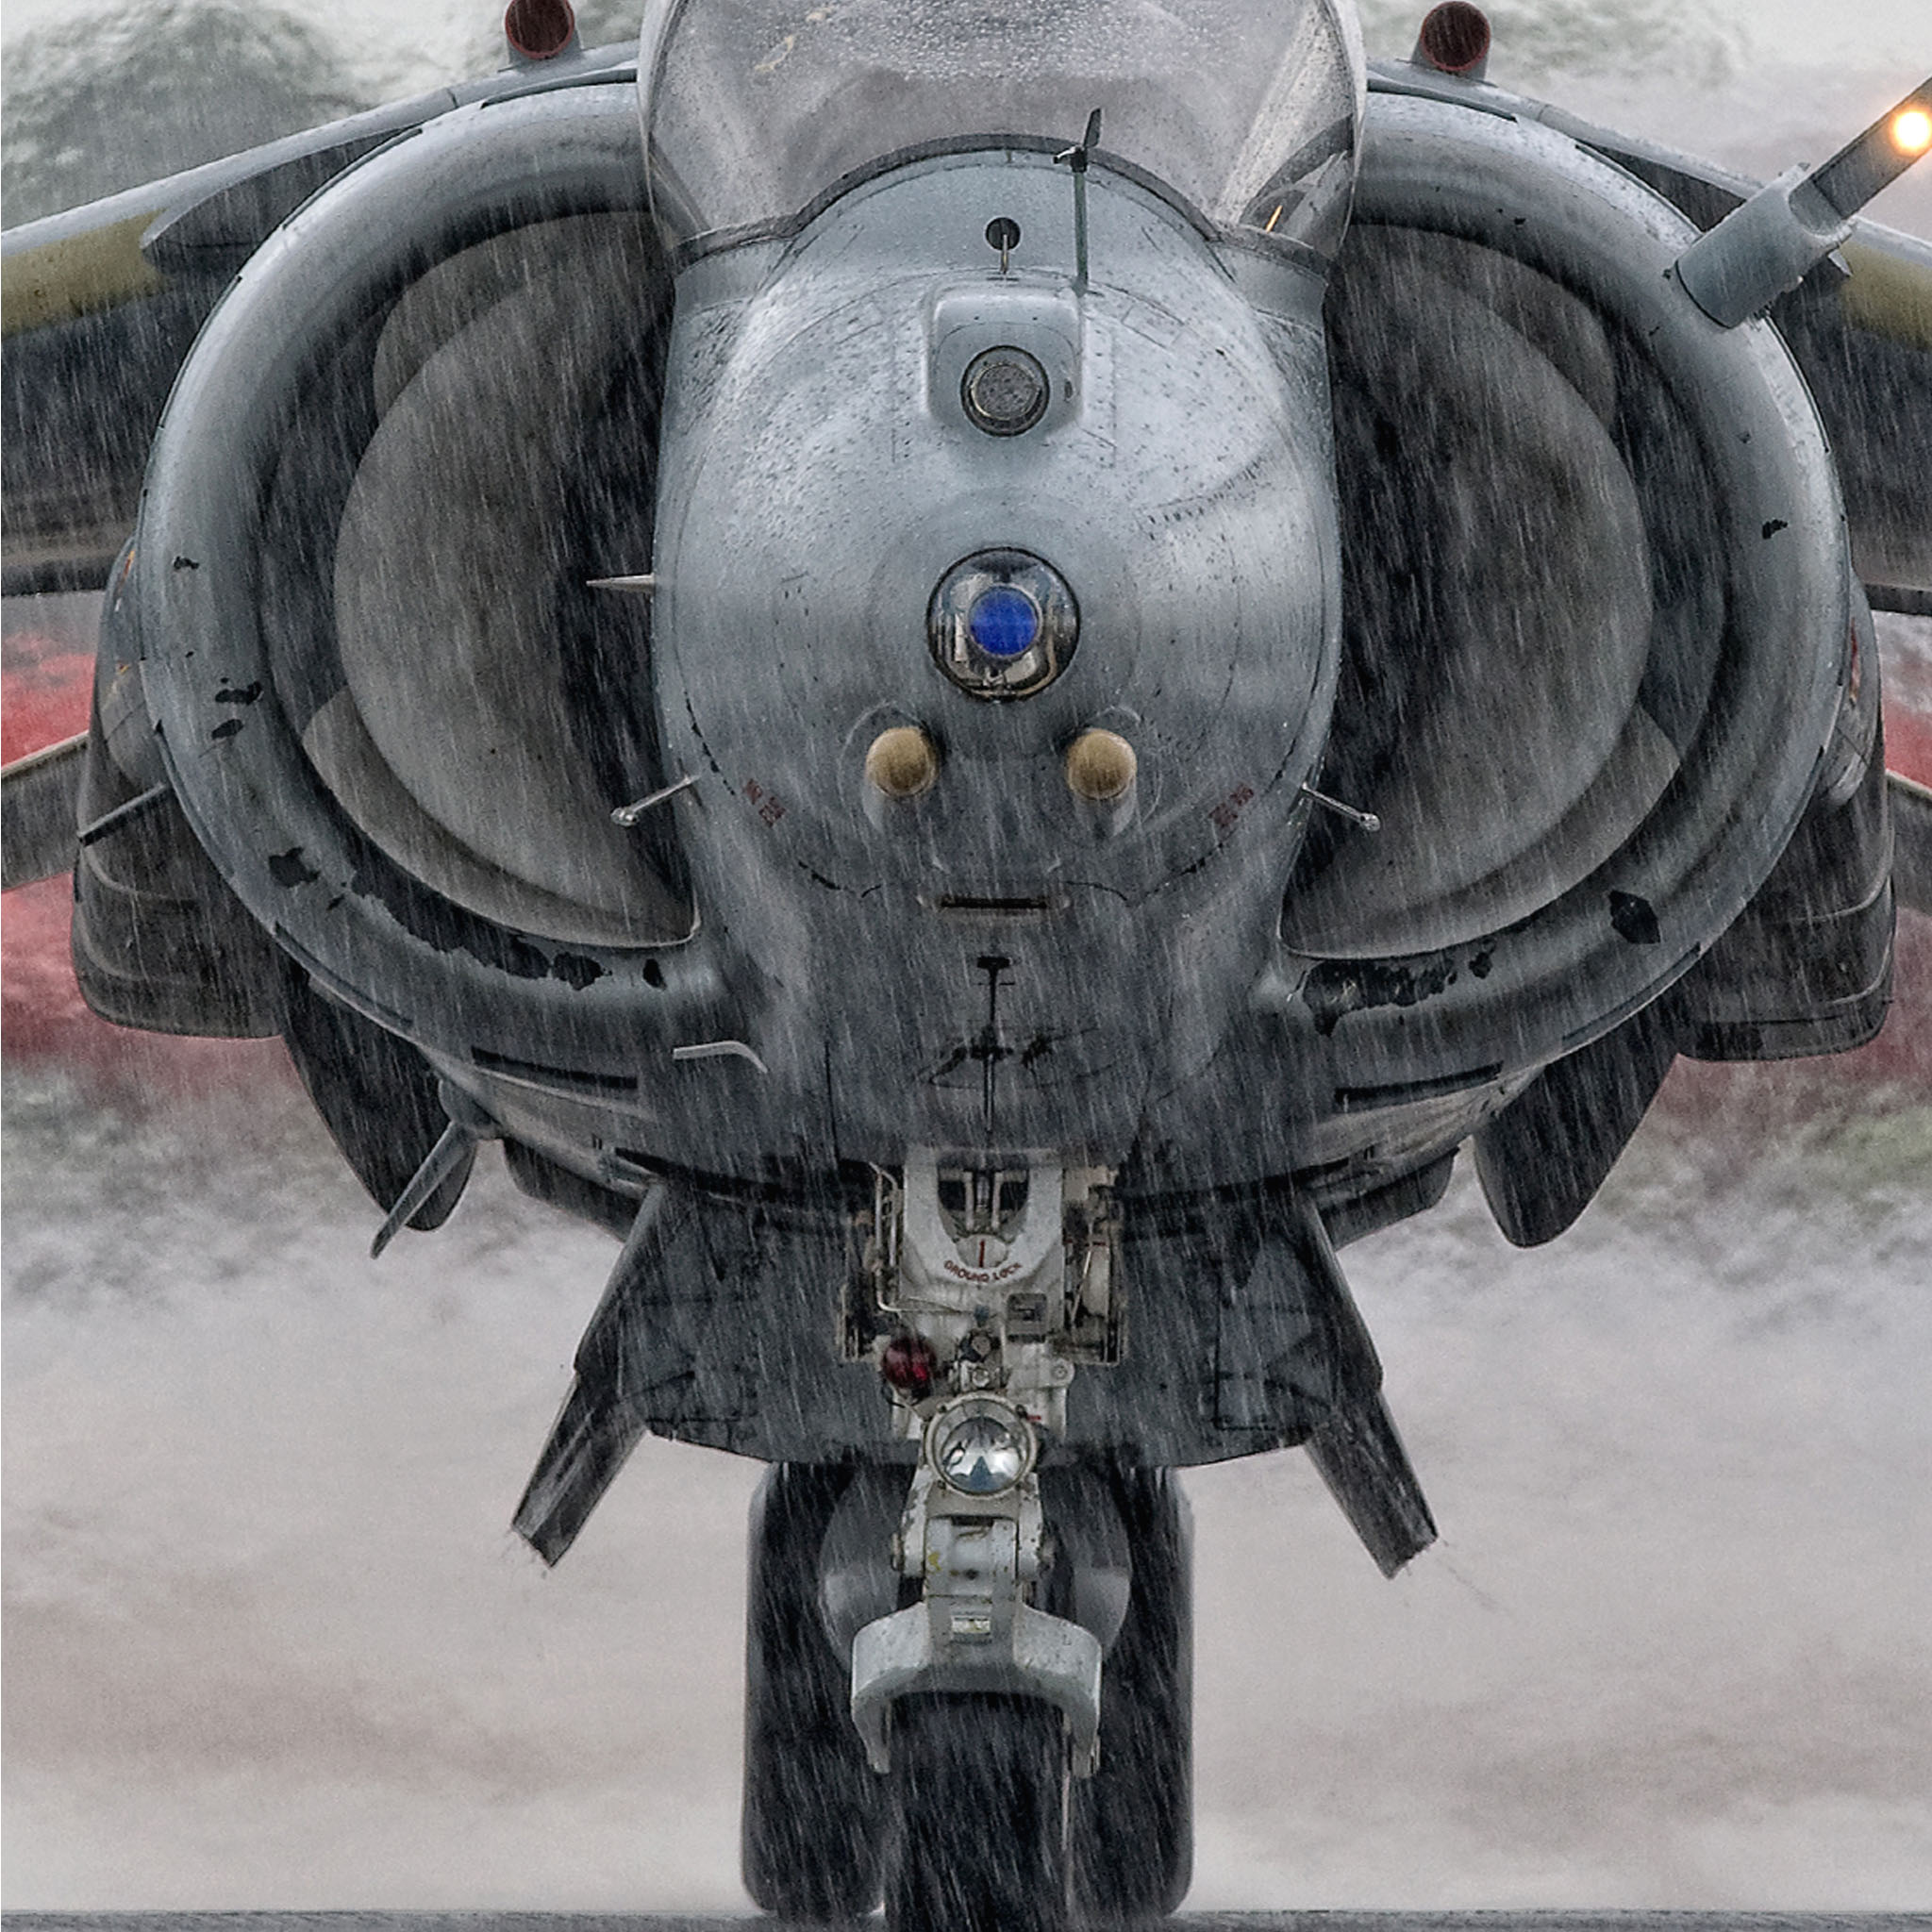 Harrier in the rain